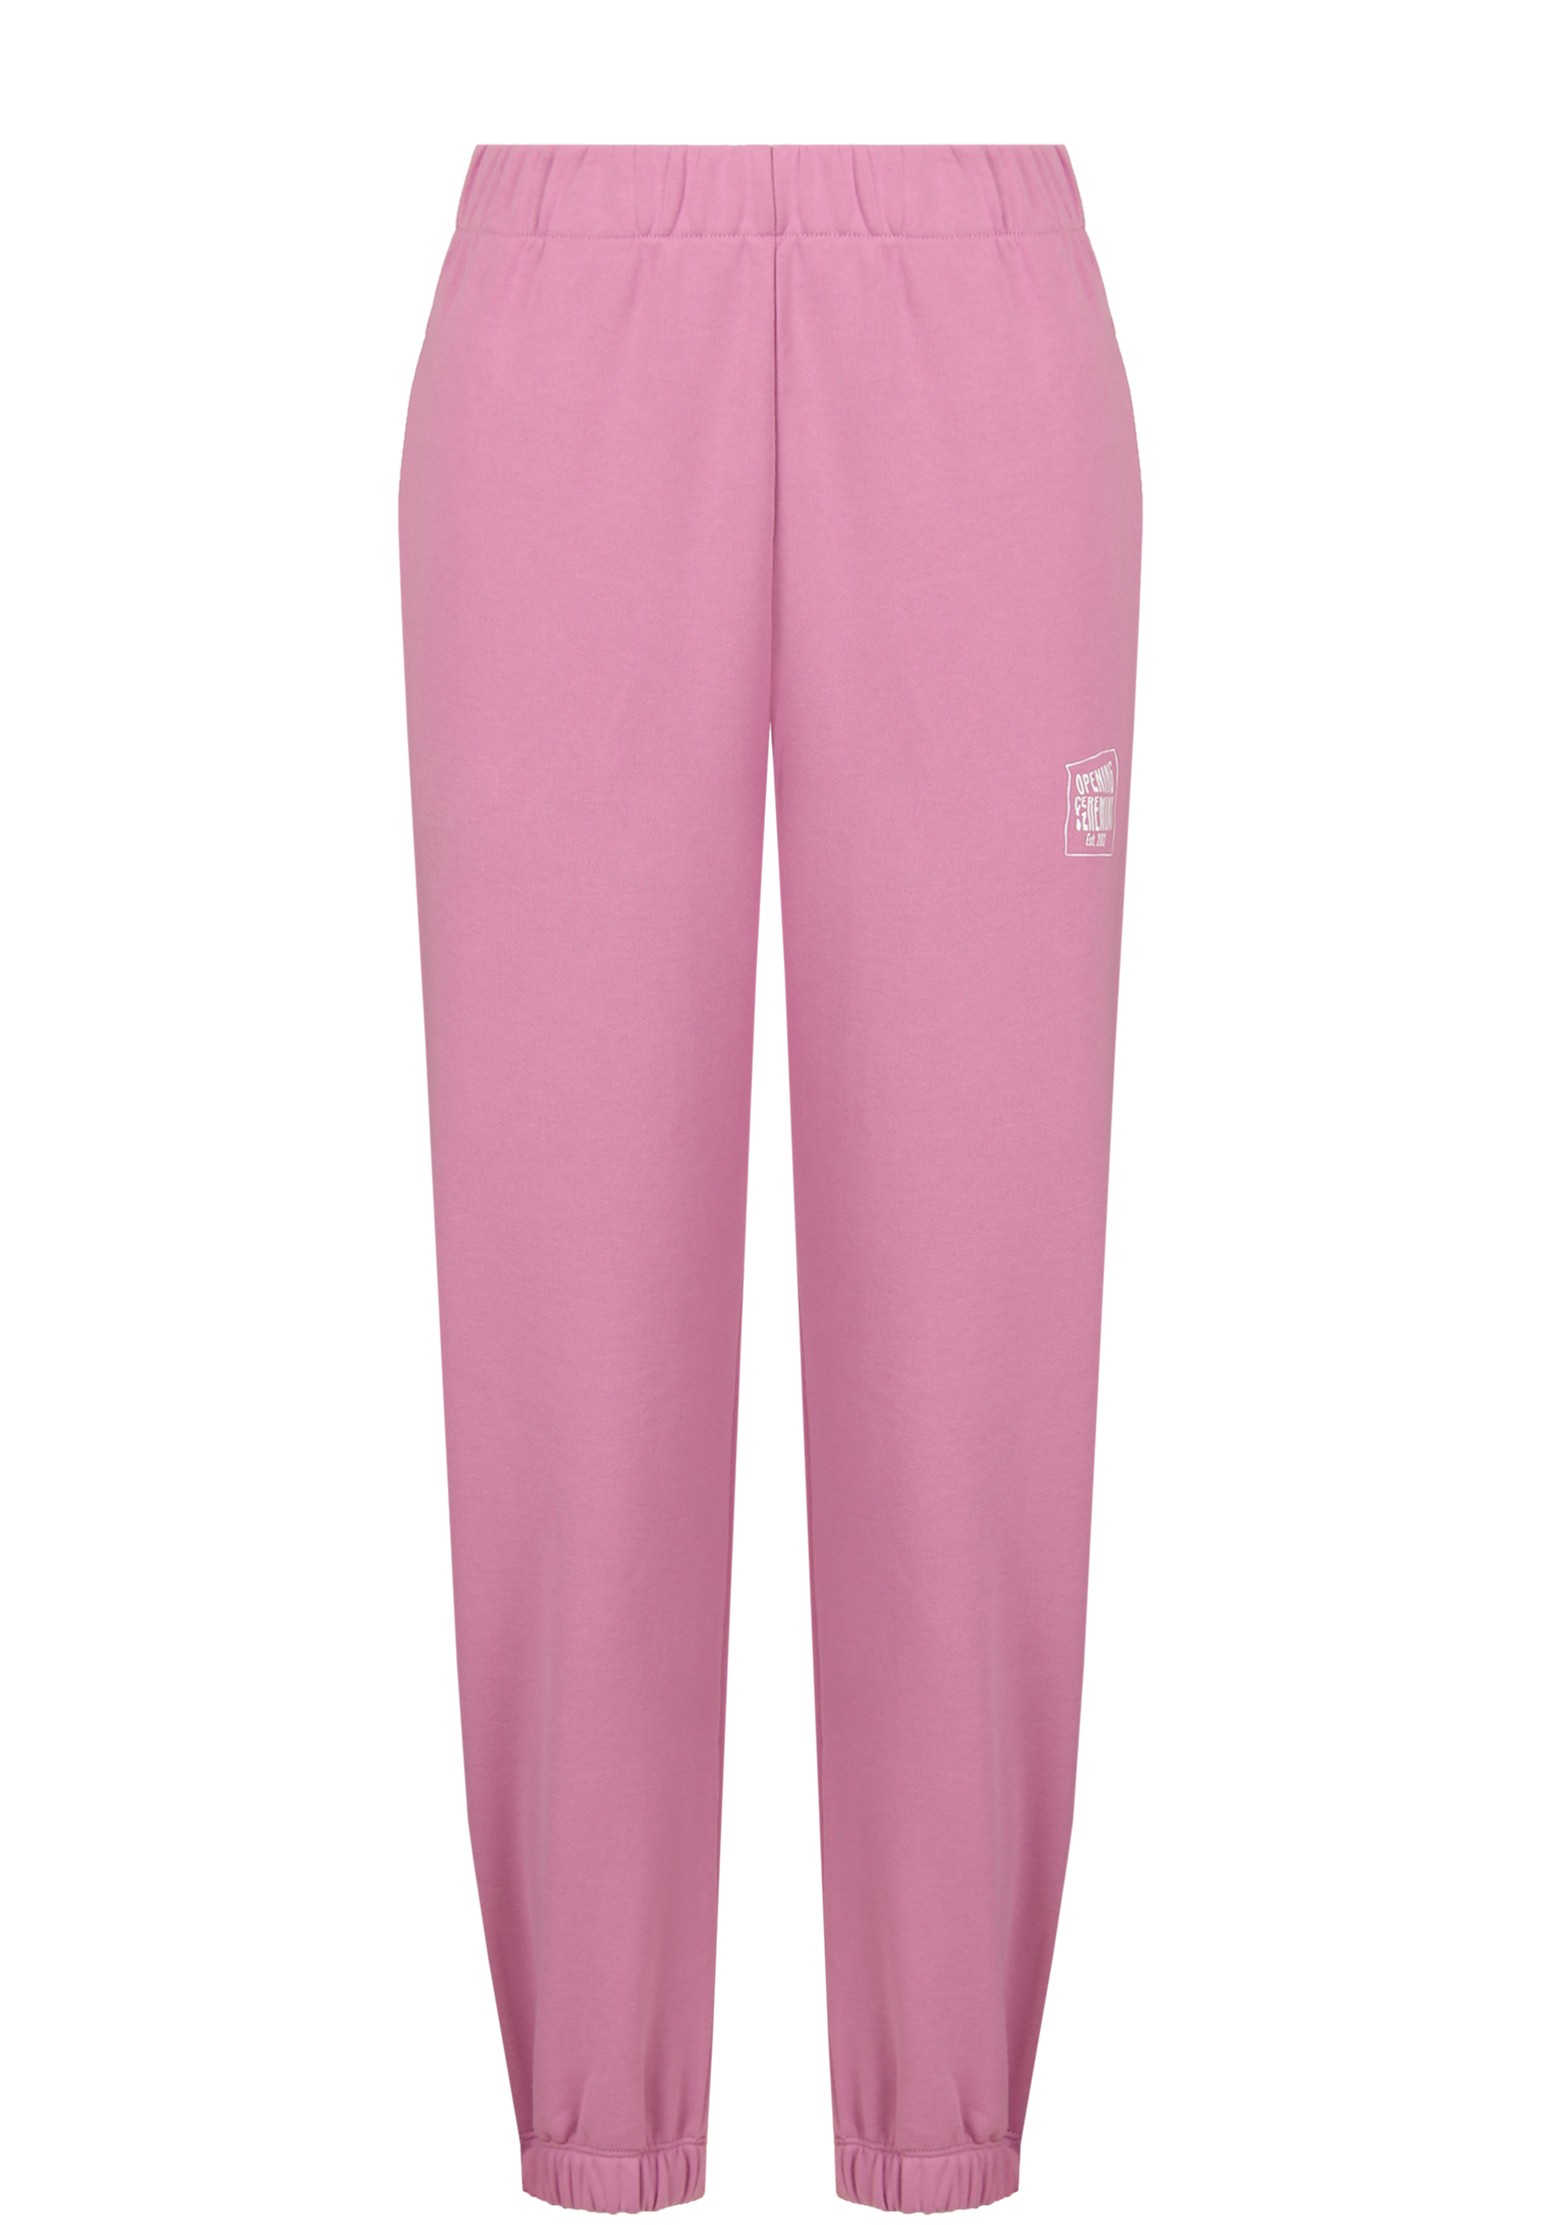 Спортивные брюки женские OPENING CEREMONY 128658 розовые S